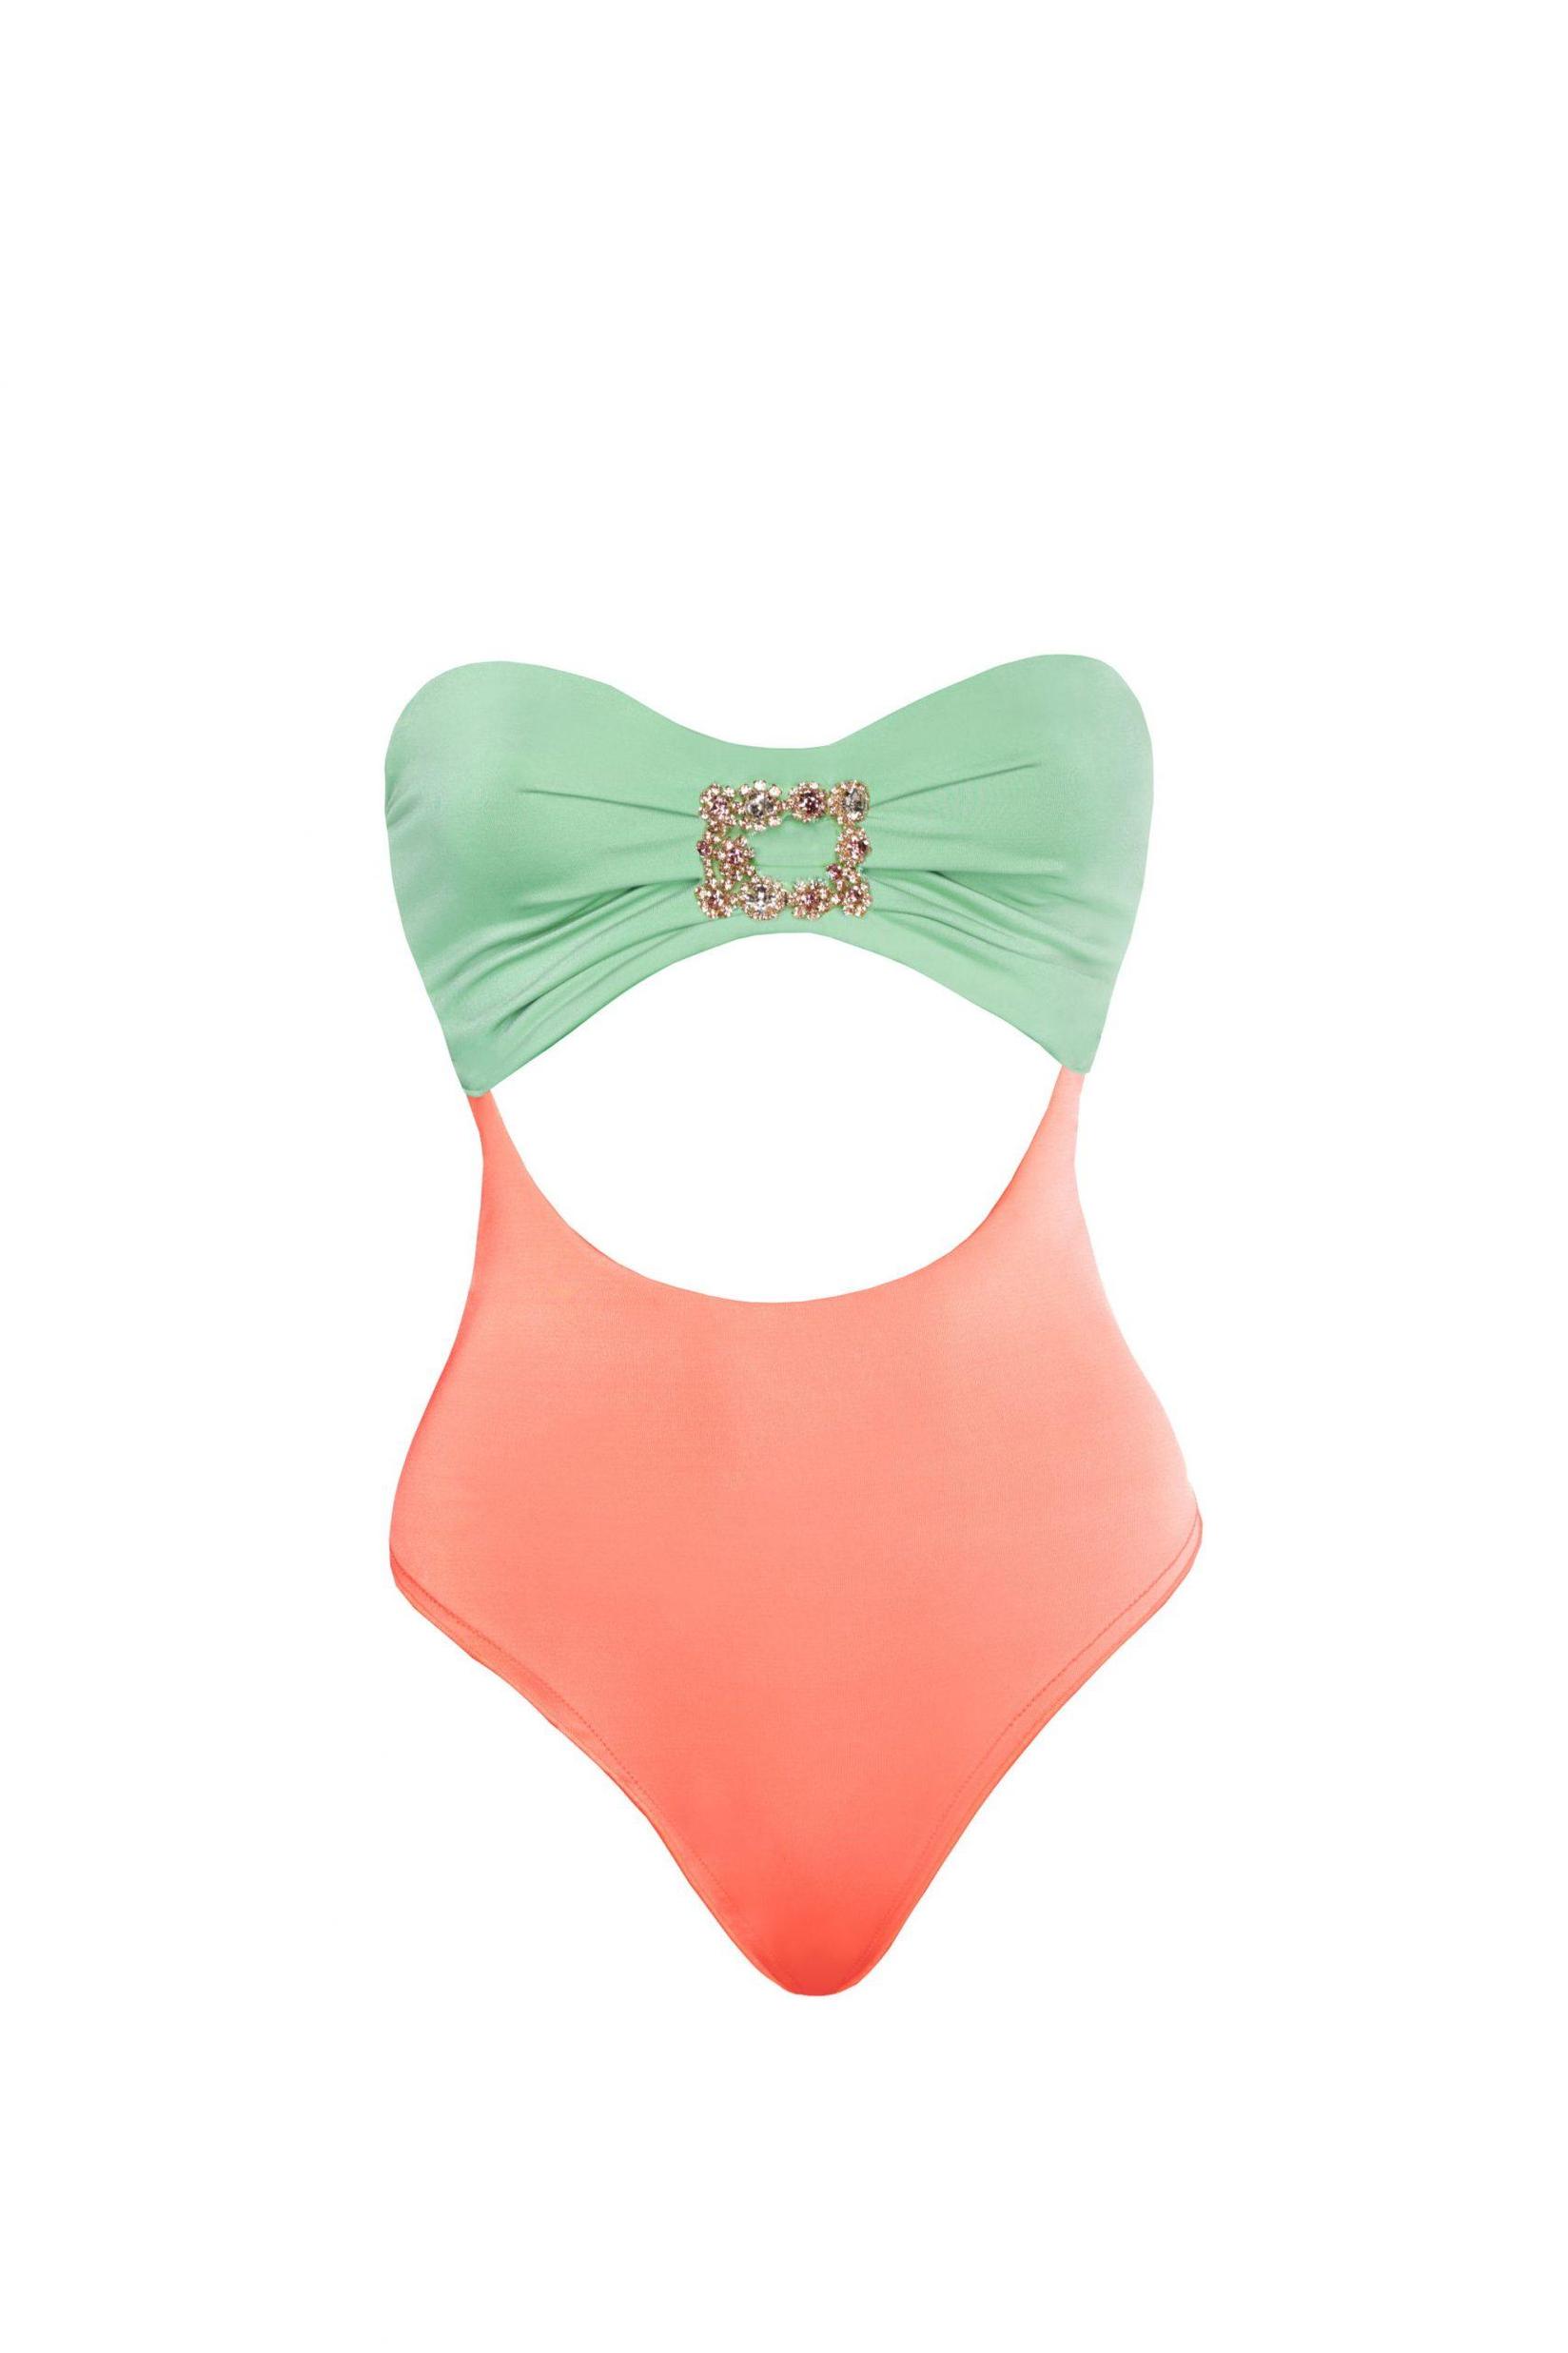 Selected image for DEVI COLLECTION Ženski jednodelni kupaći kostim Amber tirkizno-roze